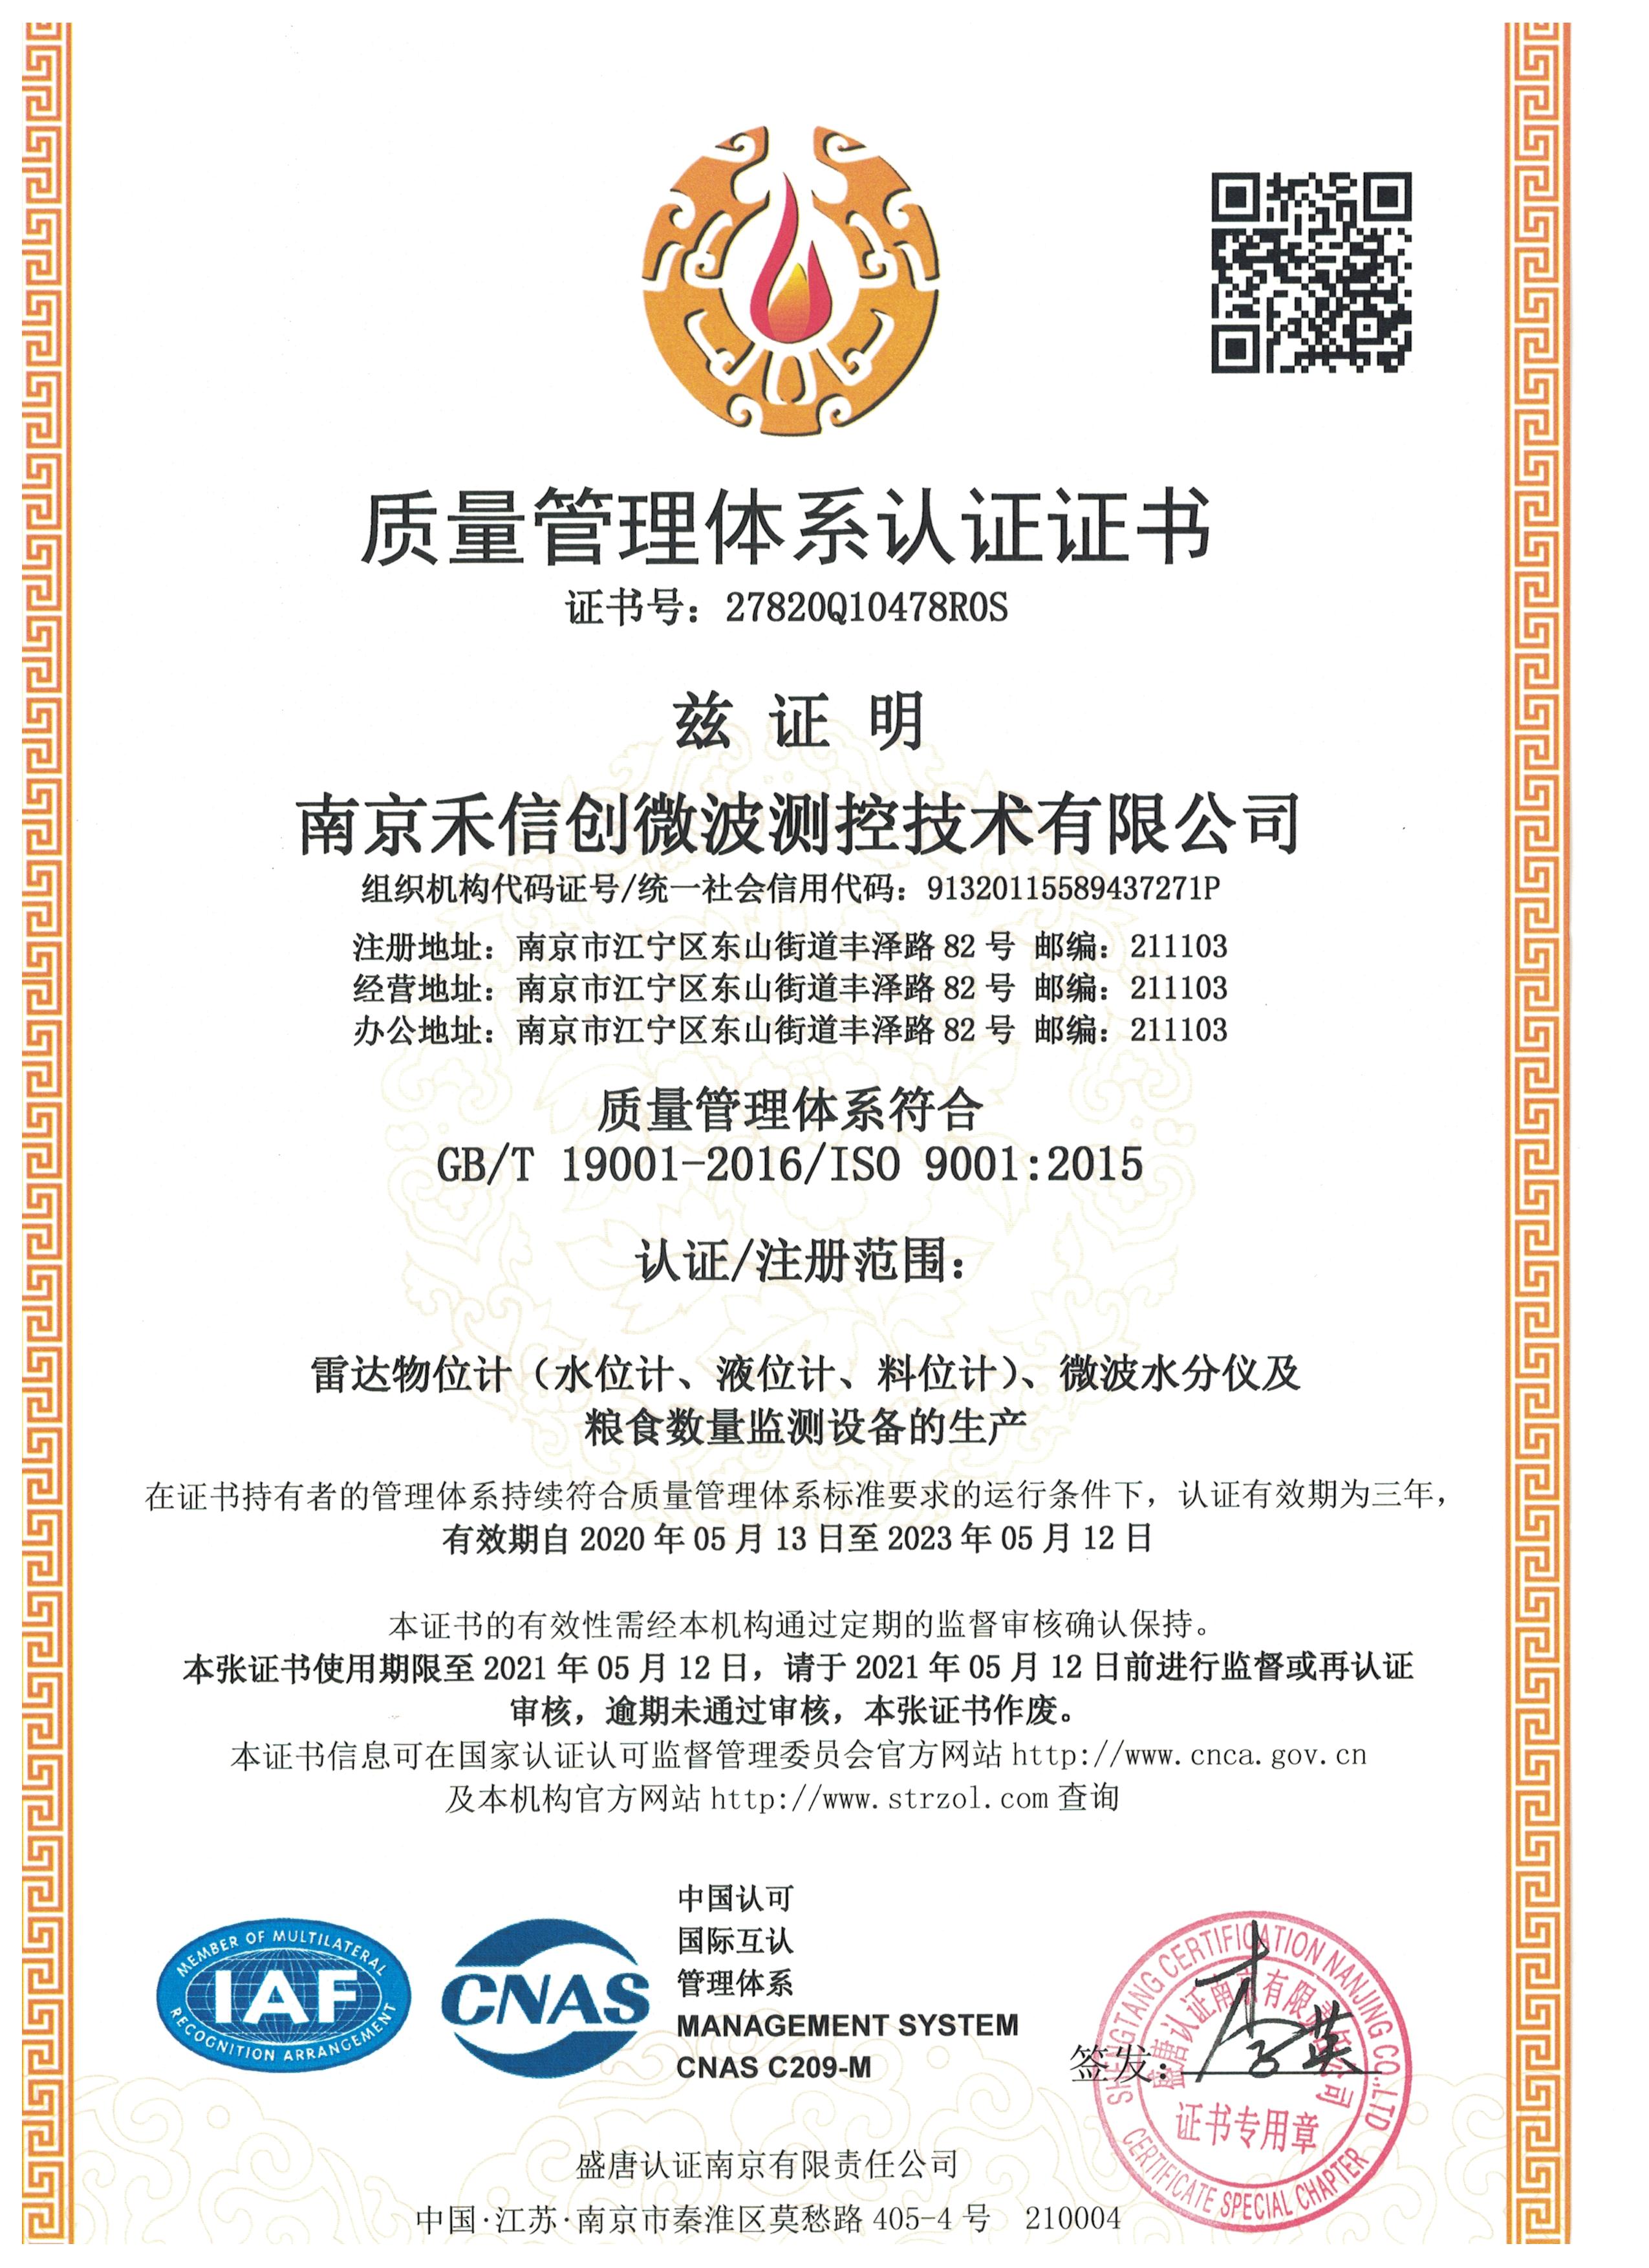 ISO9000中文